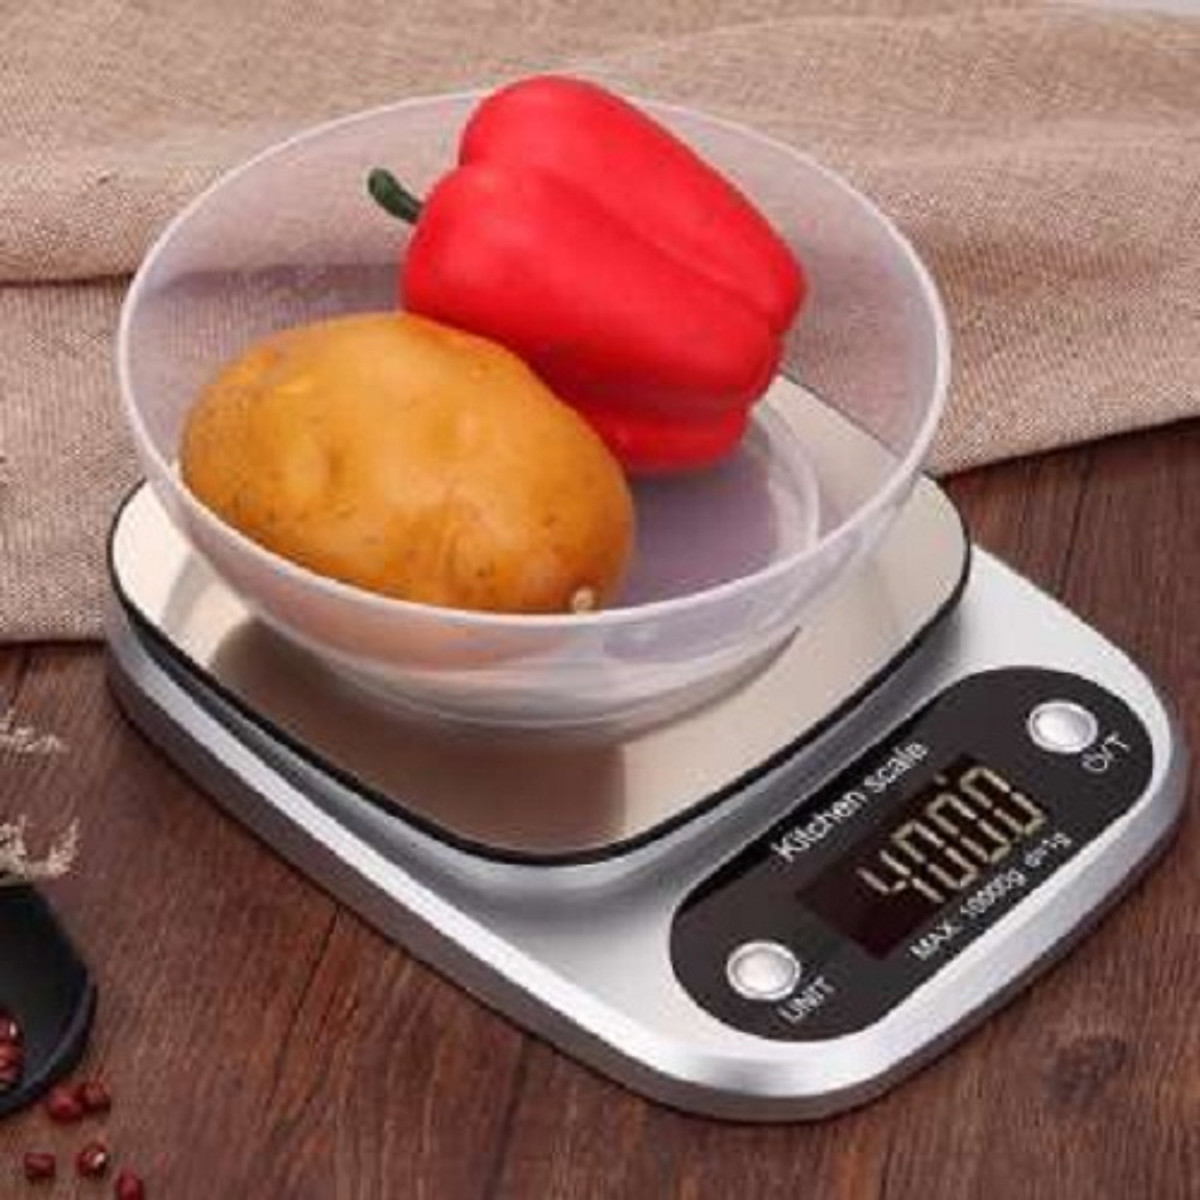 Cân điện tử thực phẩm dùng trong nhà bếp Ebalance Kitchen Scale cân được tới 10kg